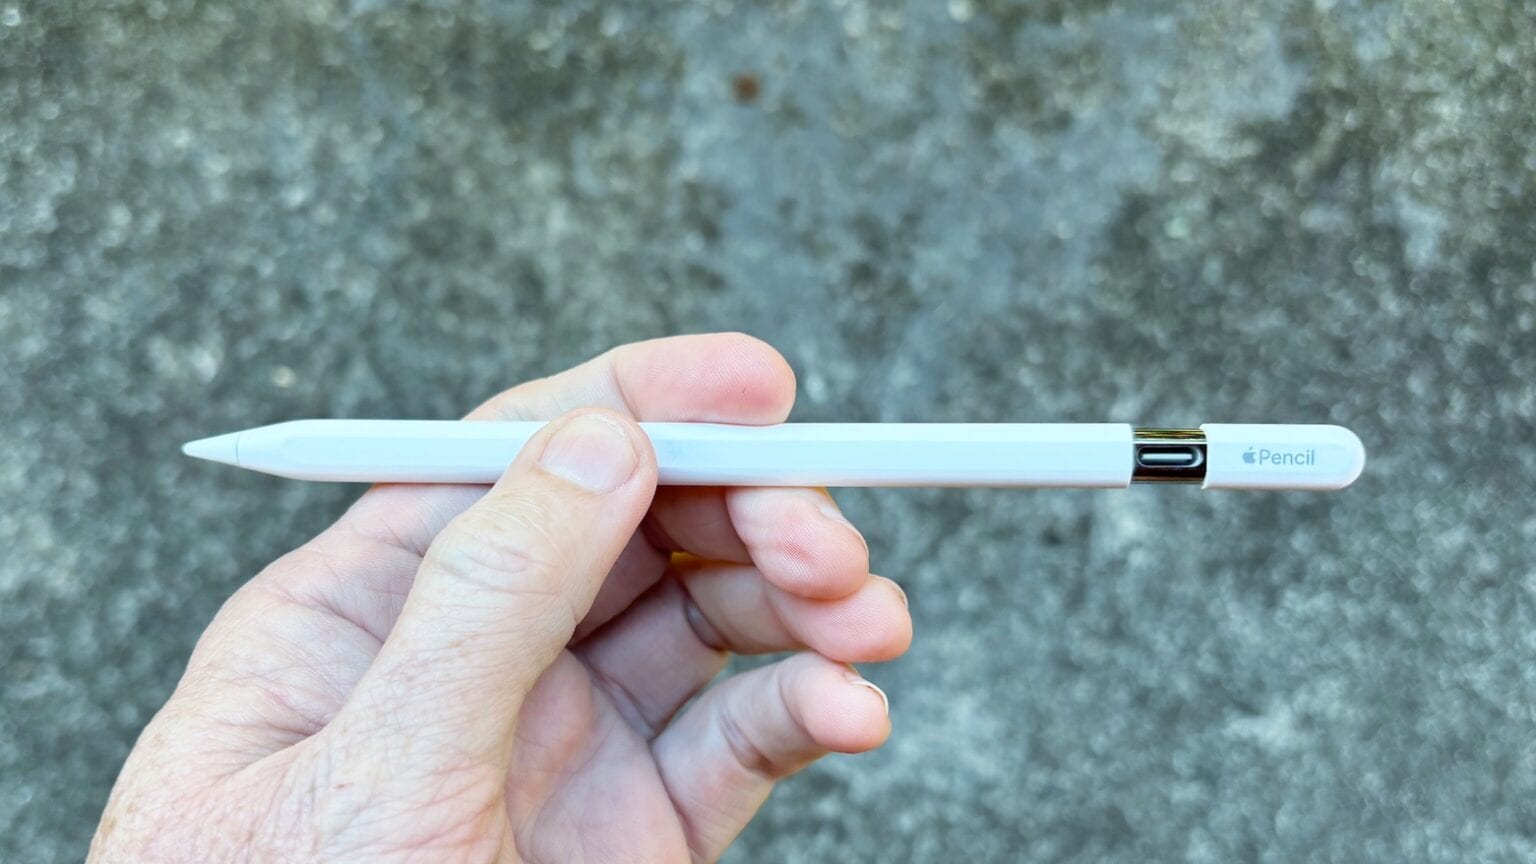 Apple Pencil (USB-C): Dành cho ngân sách thấp (Ảnh: Internet)